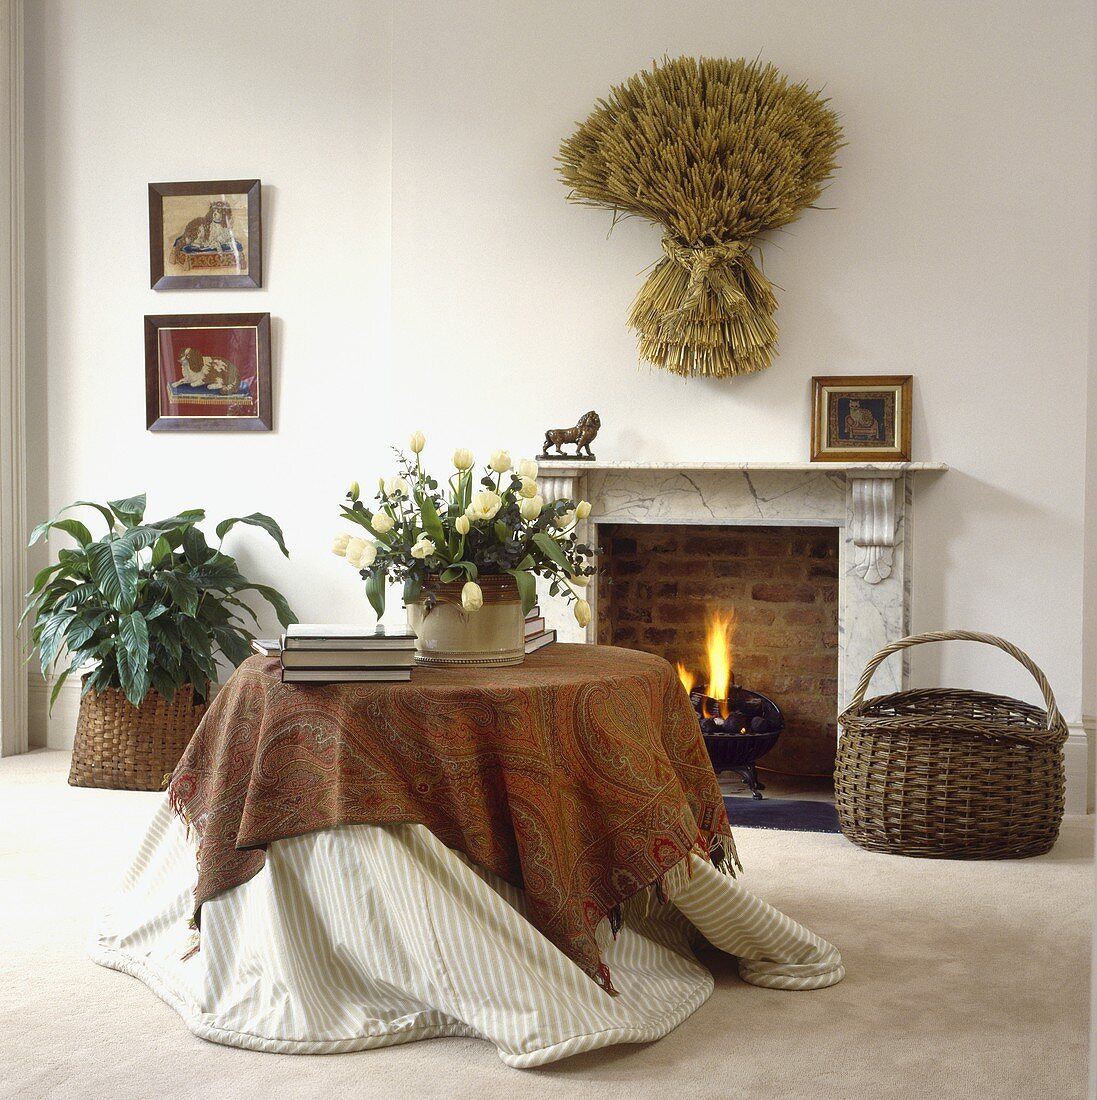 Ein runder Tisch mit Paisley Tuch vor dem Kamin in einem Wohnzimmer